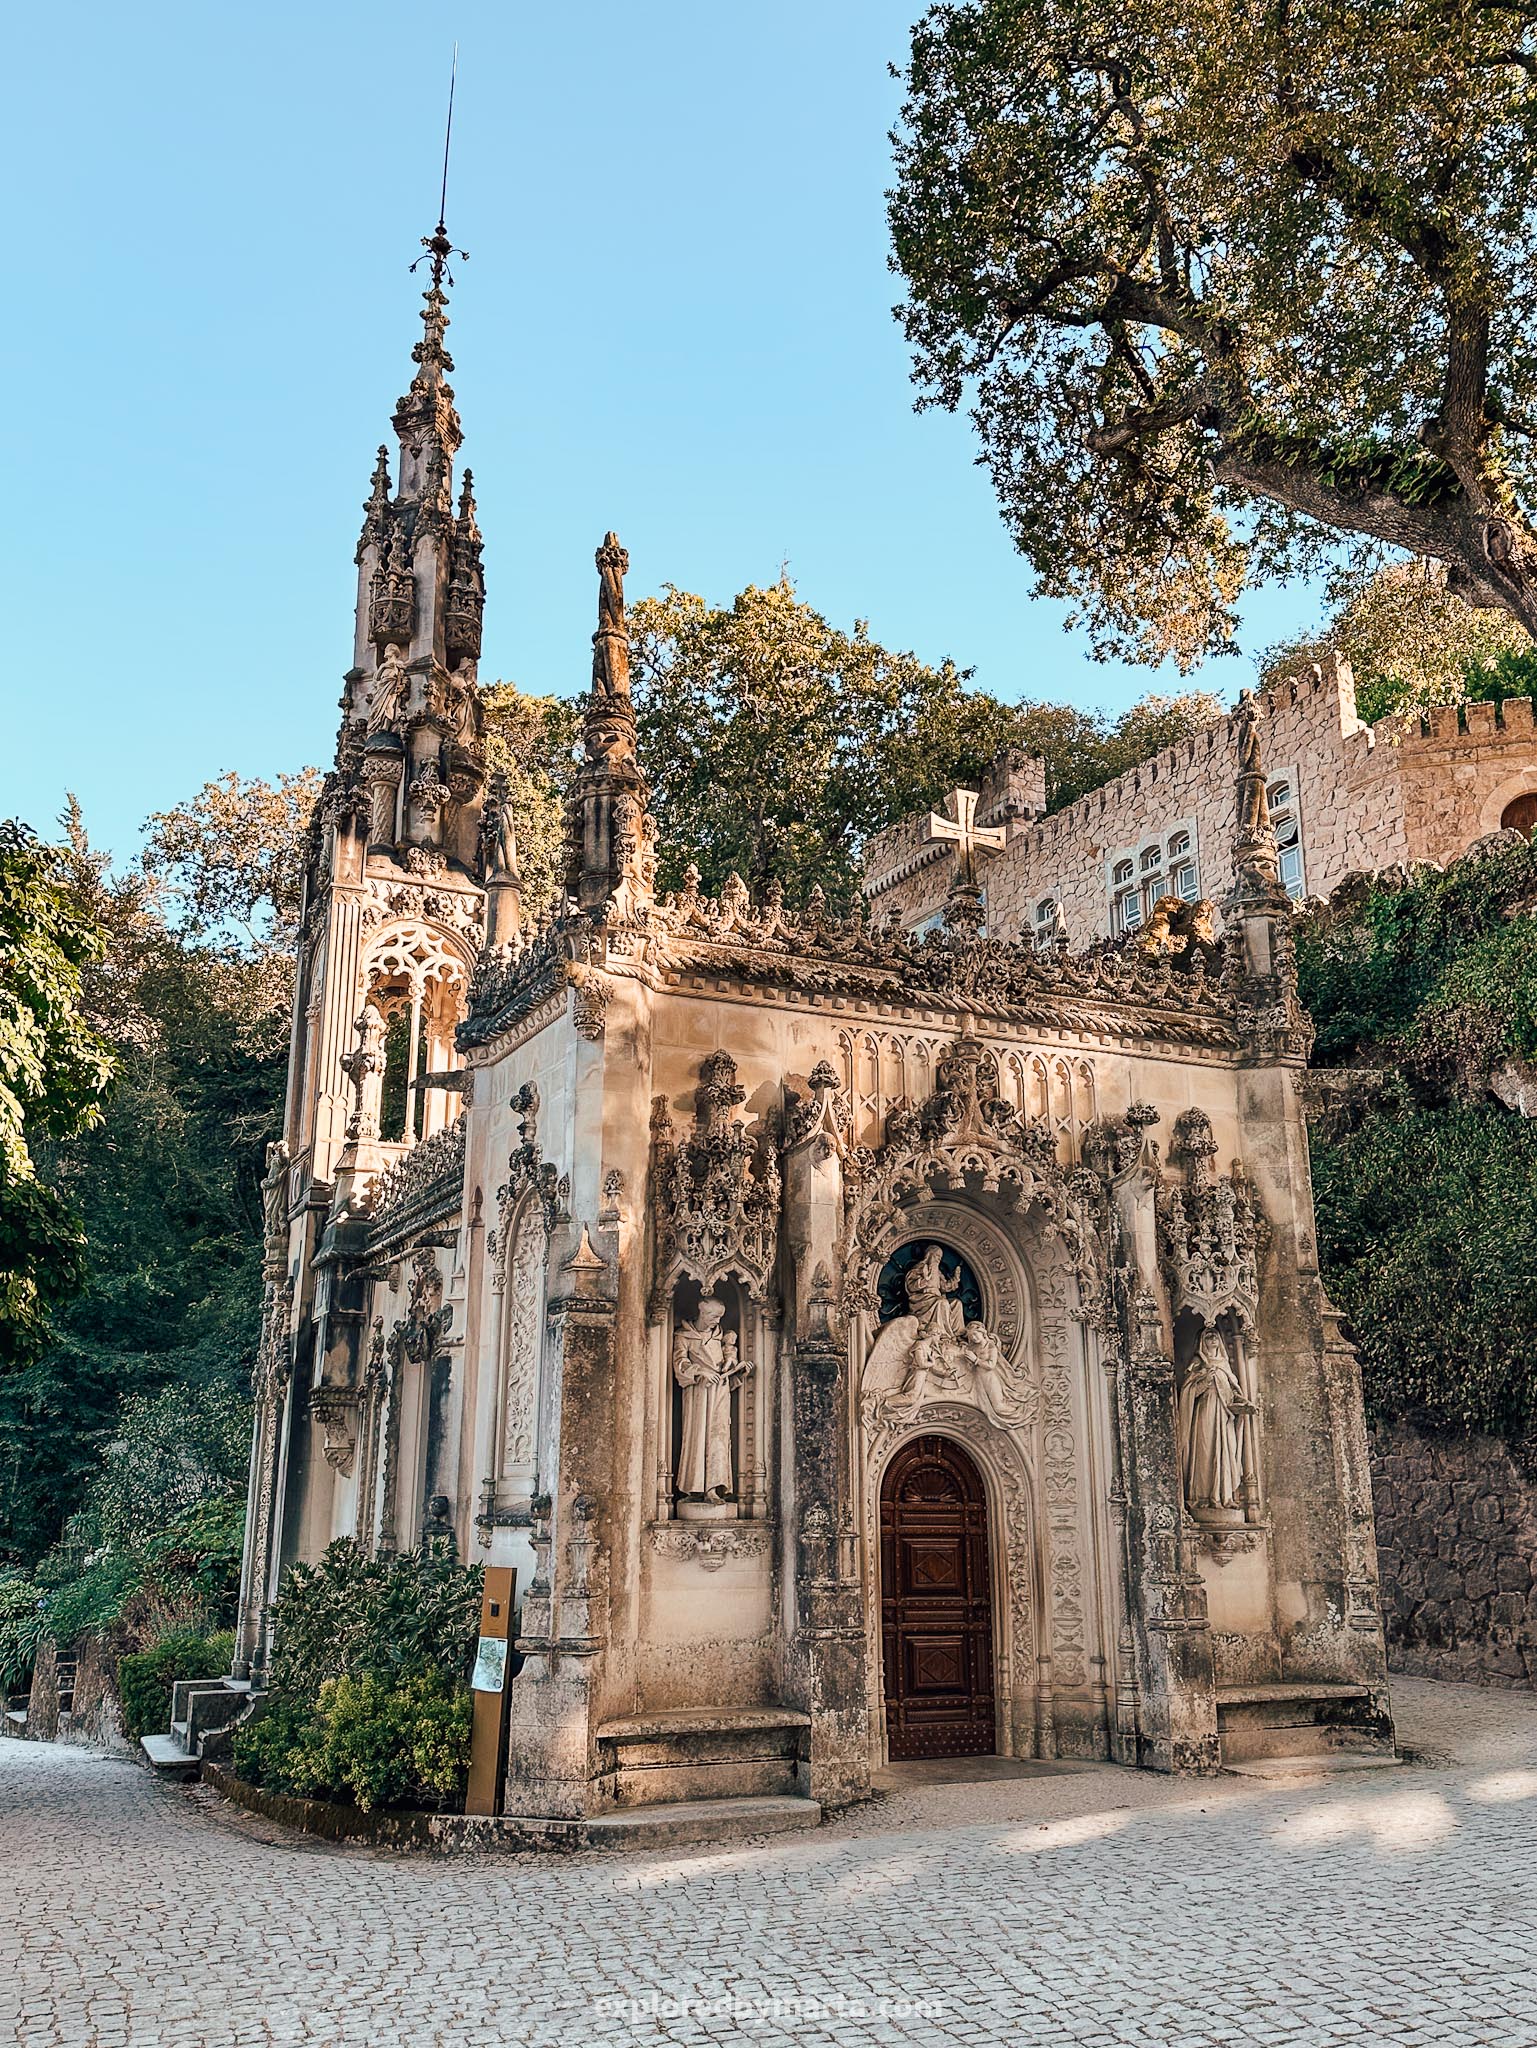 Sintra, Portugal-Quinta da Regaleira-The Regaleira Chapel